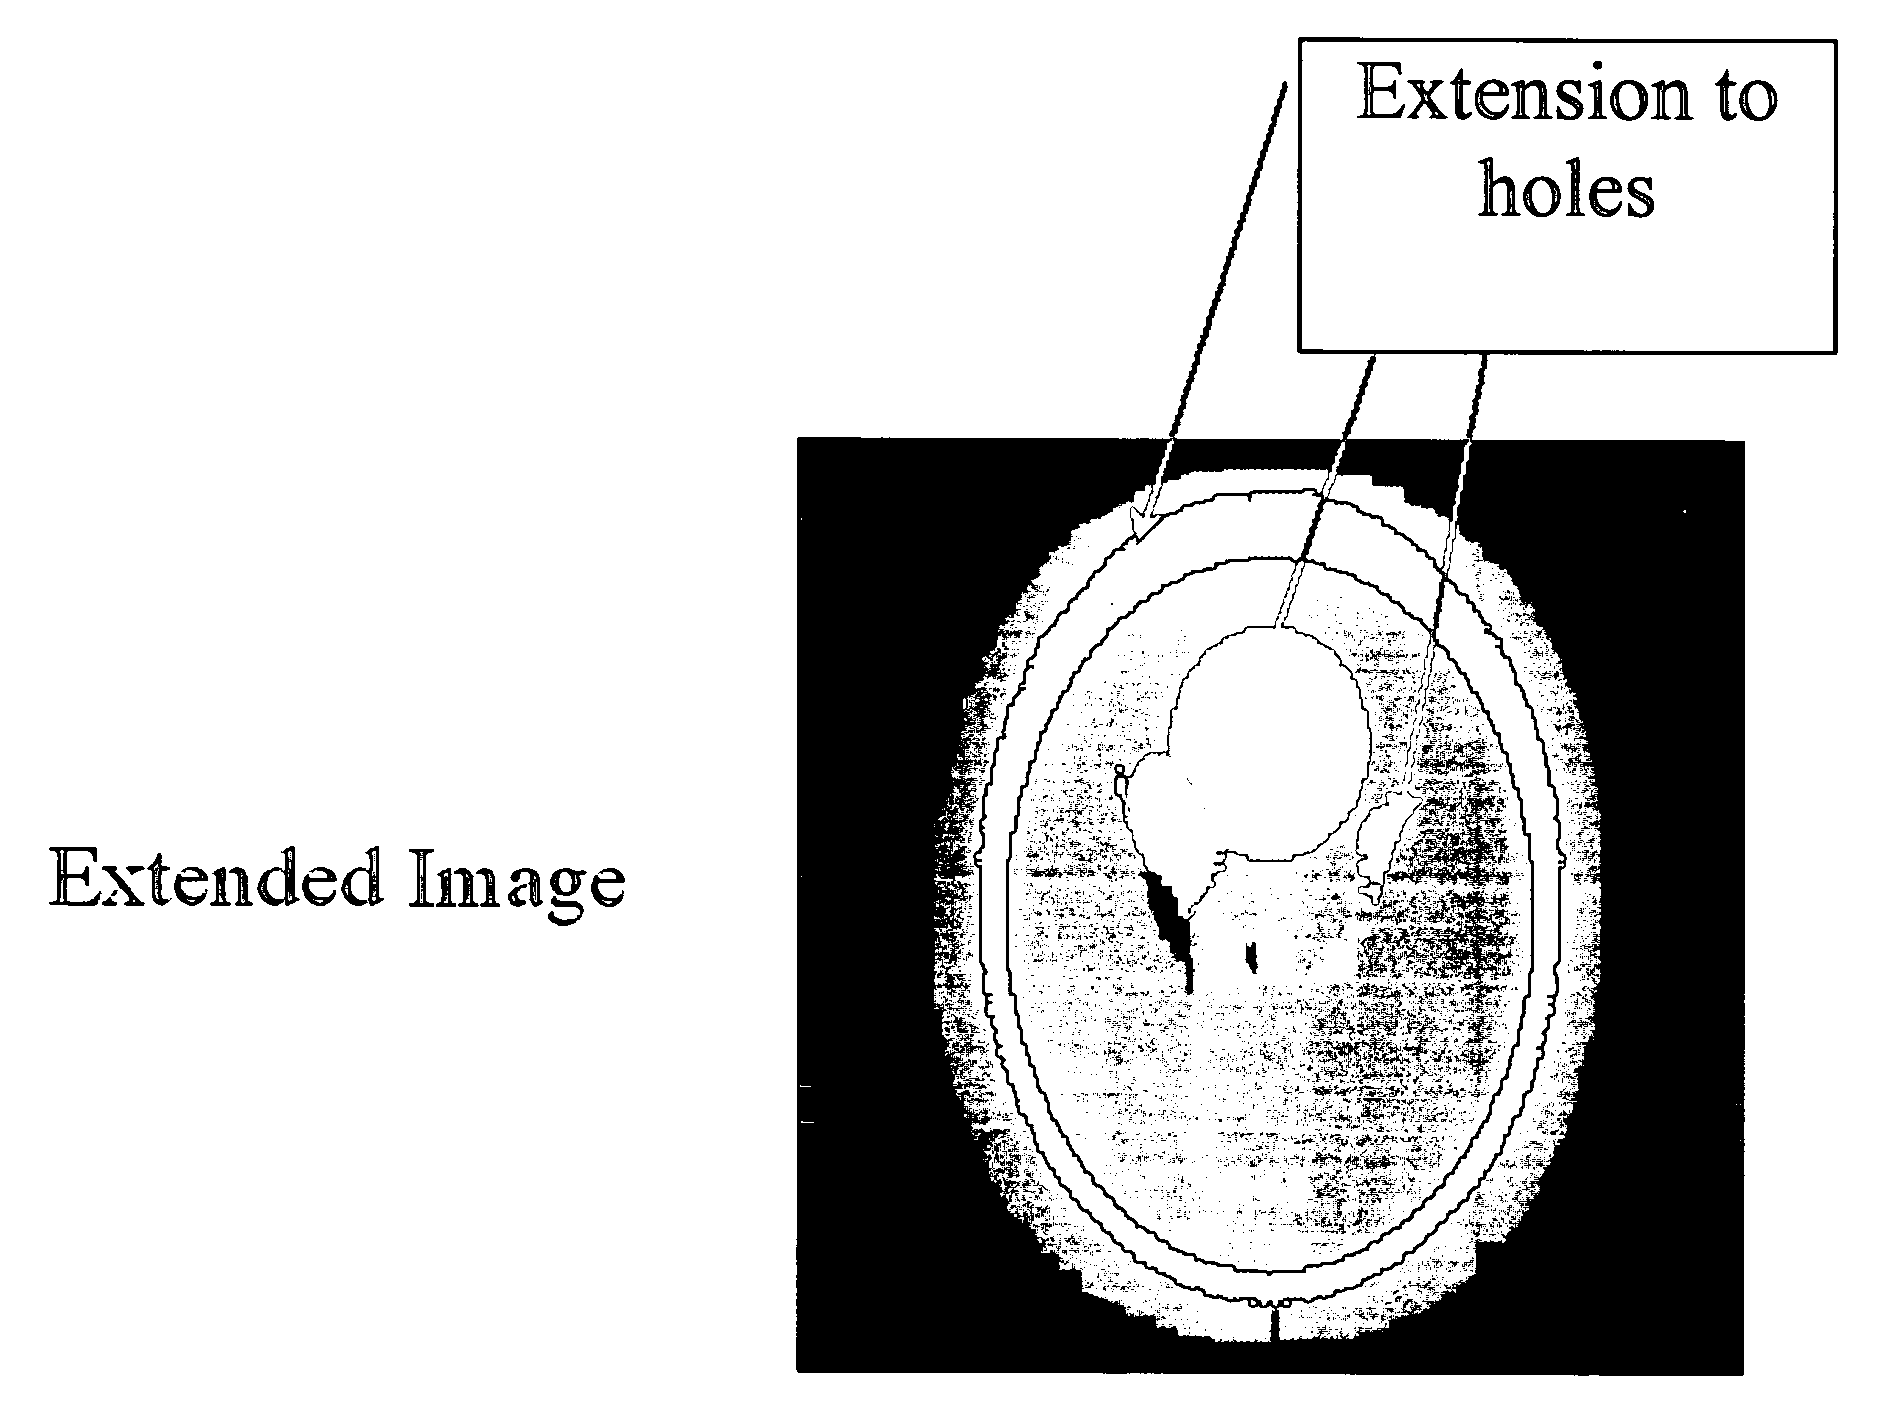 Method for image intensity correction using extrapolation and adaptive smoothing